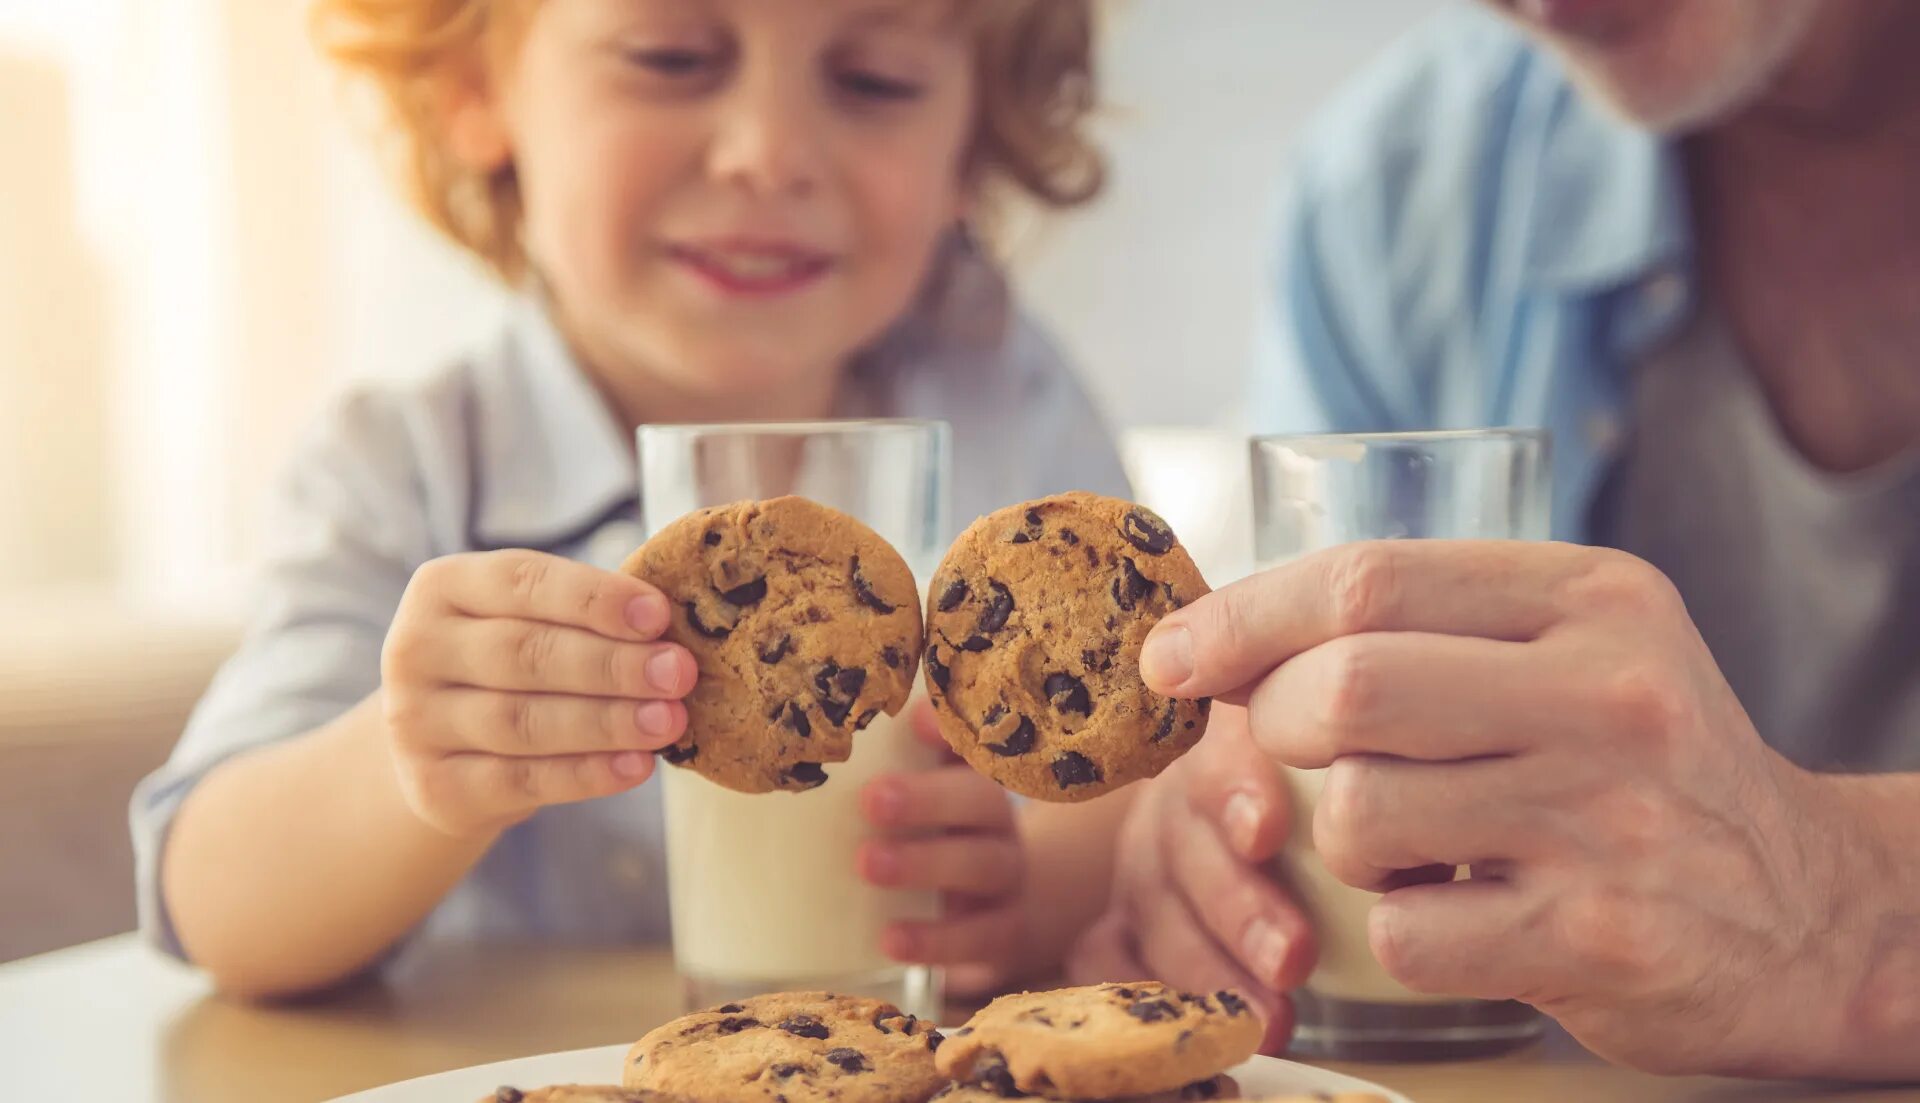 Печенье для детей. Ребенок ест печенье. Люди едят шоколадное печенье. Печенье в руке. Eating cookies